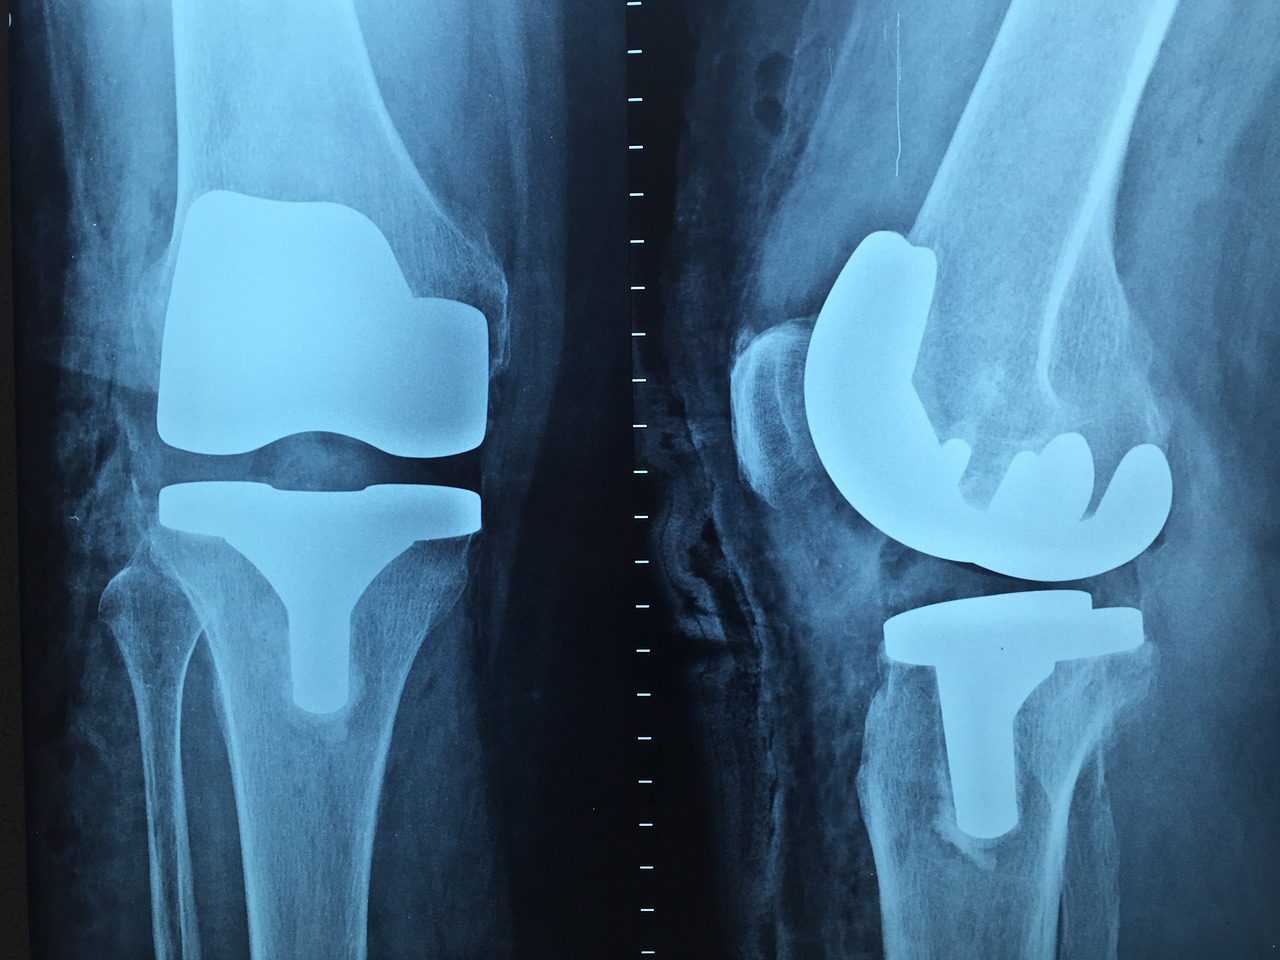 Kiedy najczęściej zgłaszamy się do ortopedy?